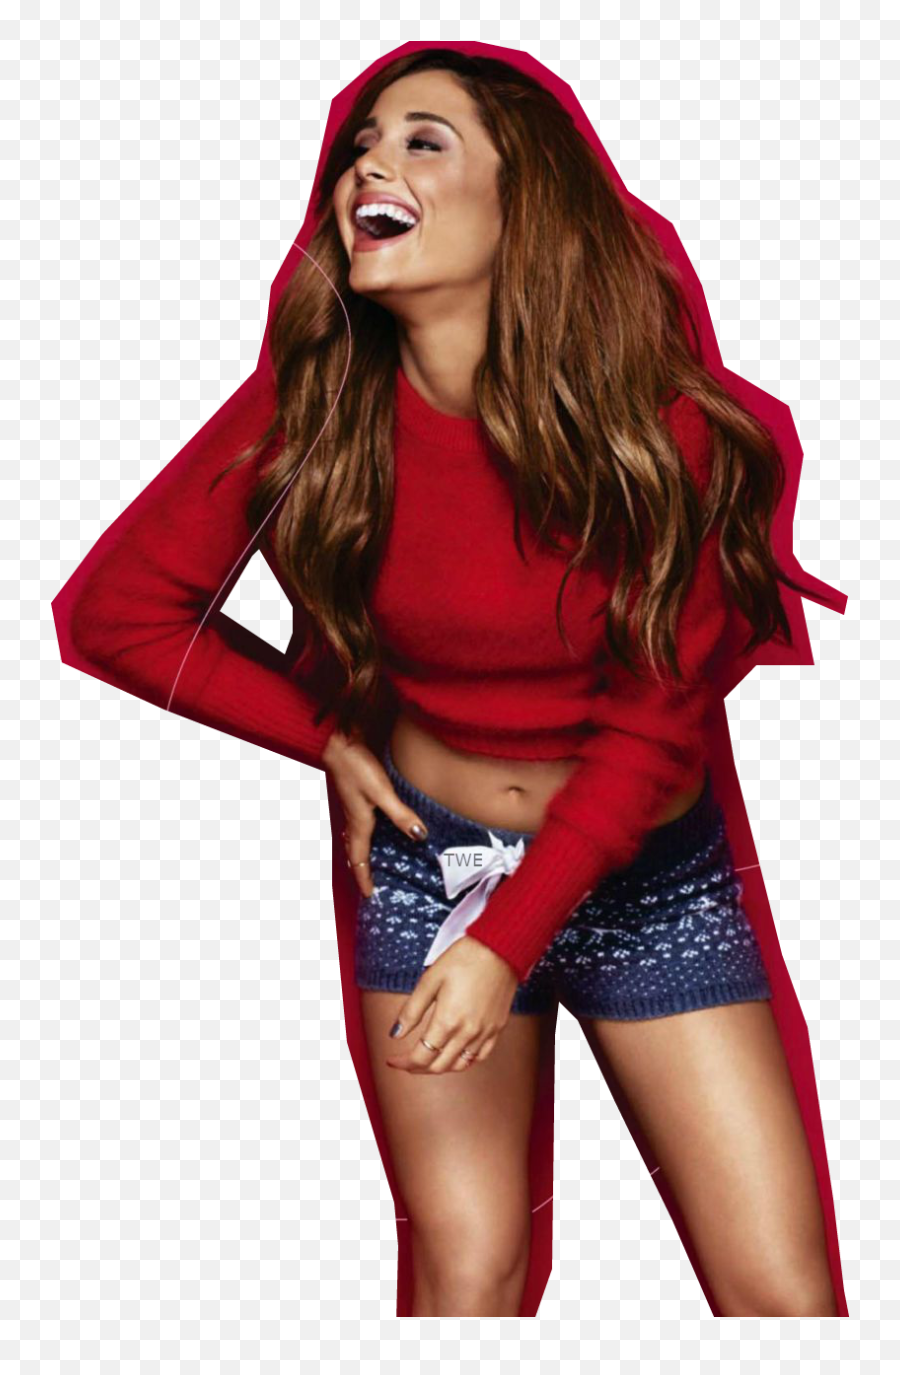 Celebrtys Bloegg Ariana Grande Hot - Ariana Grande Christmas Outfits Png,Ariana Grande Transparent Background